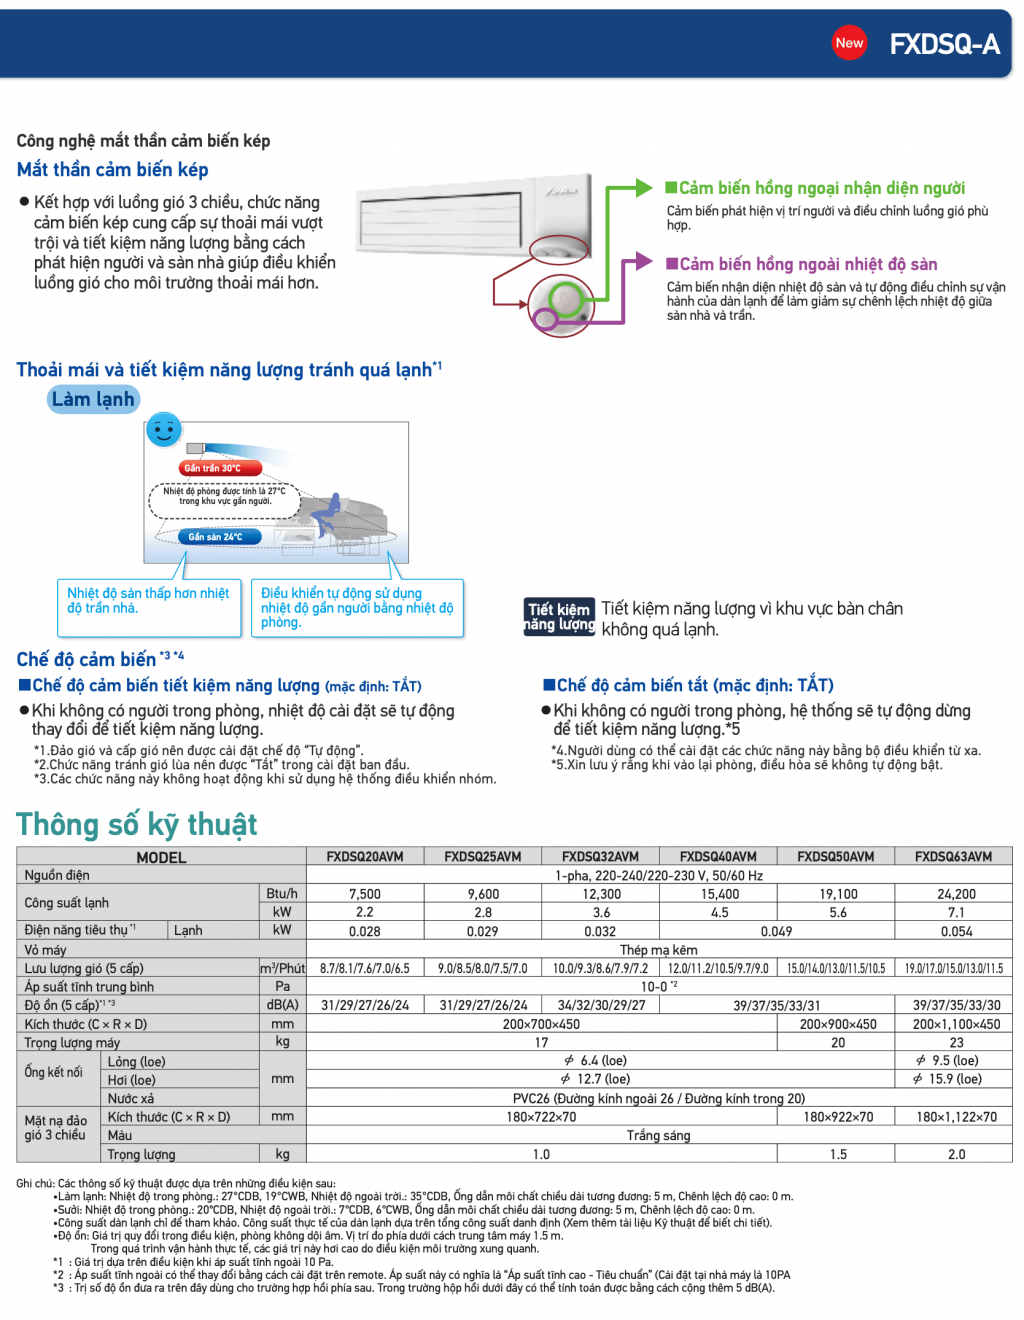 Giấu trần nối ống gió dạn mỏng (loại tiêu chuẩn): FXDQ-PD/ND